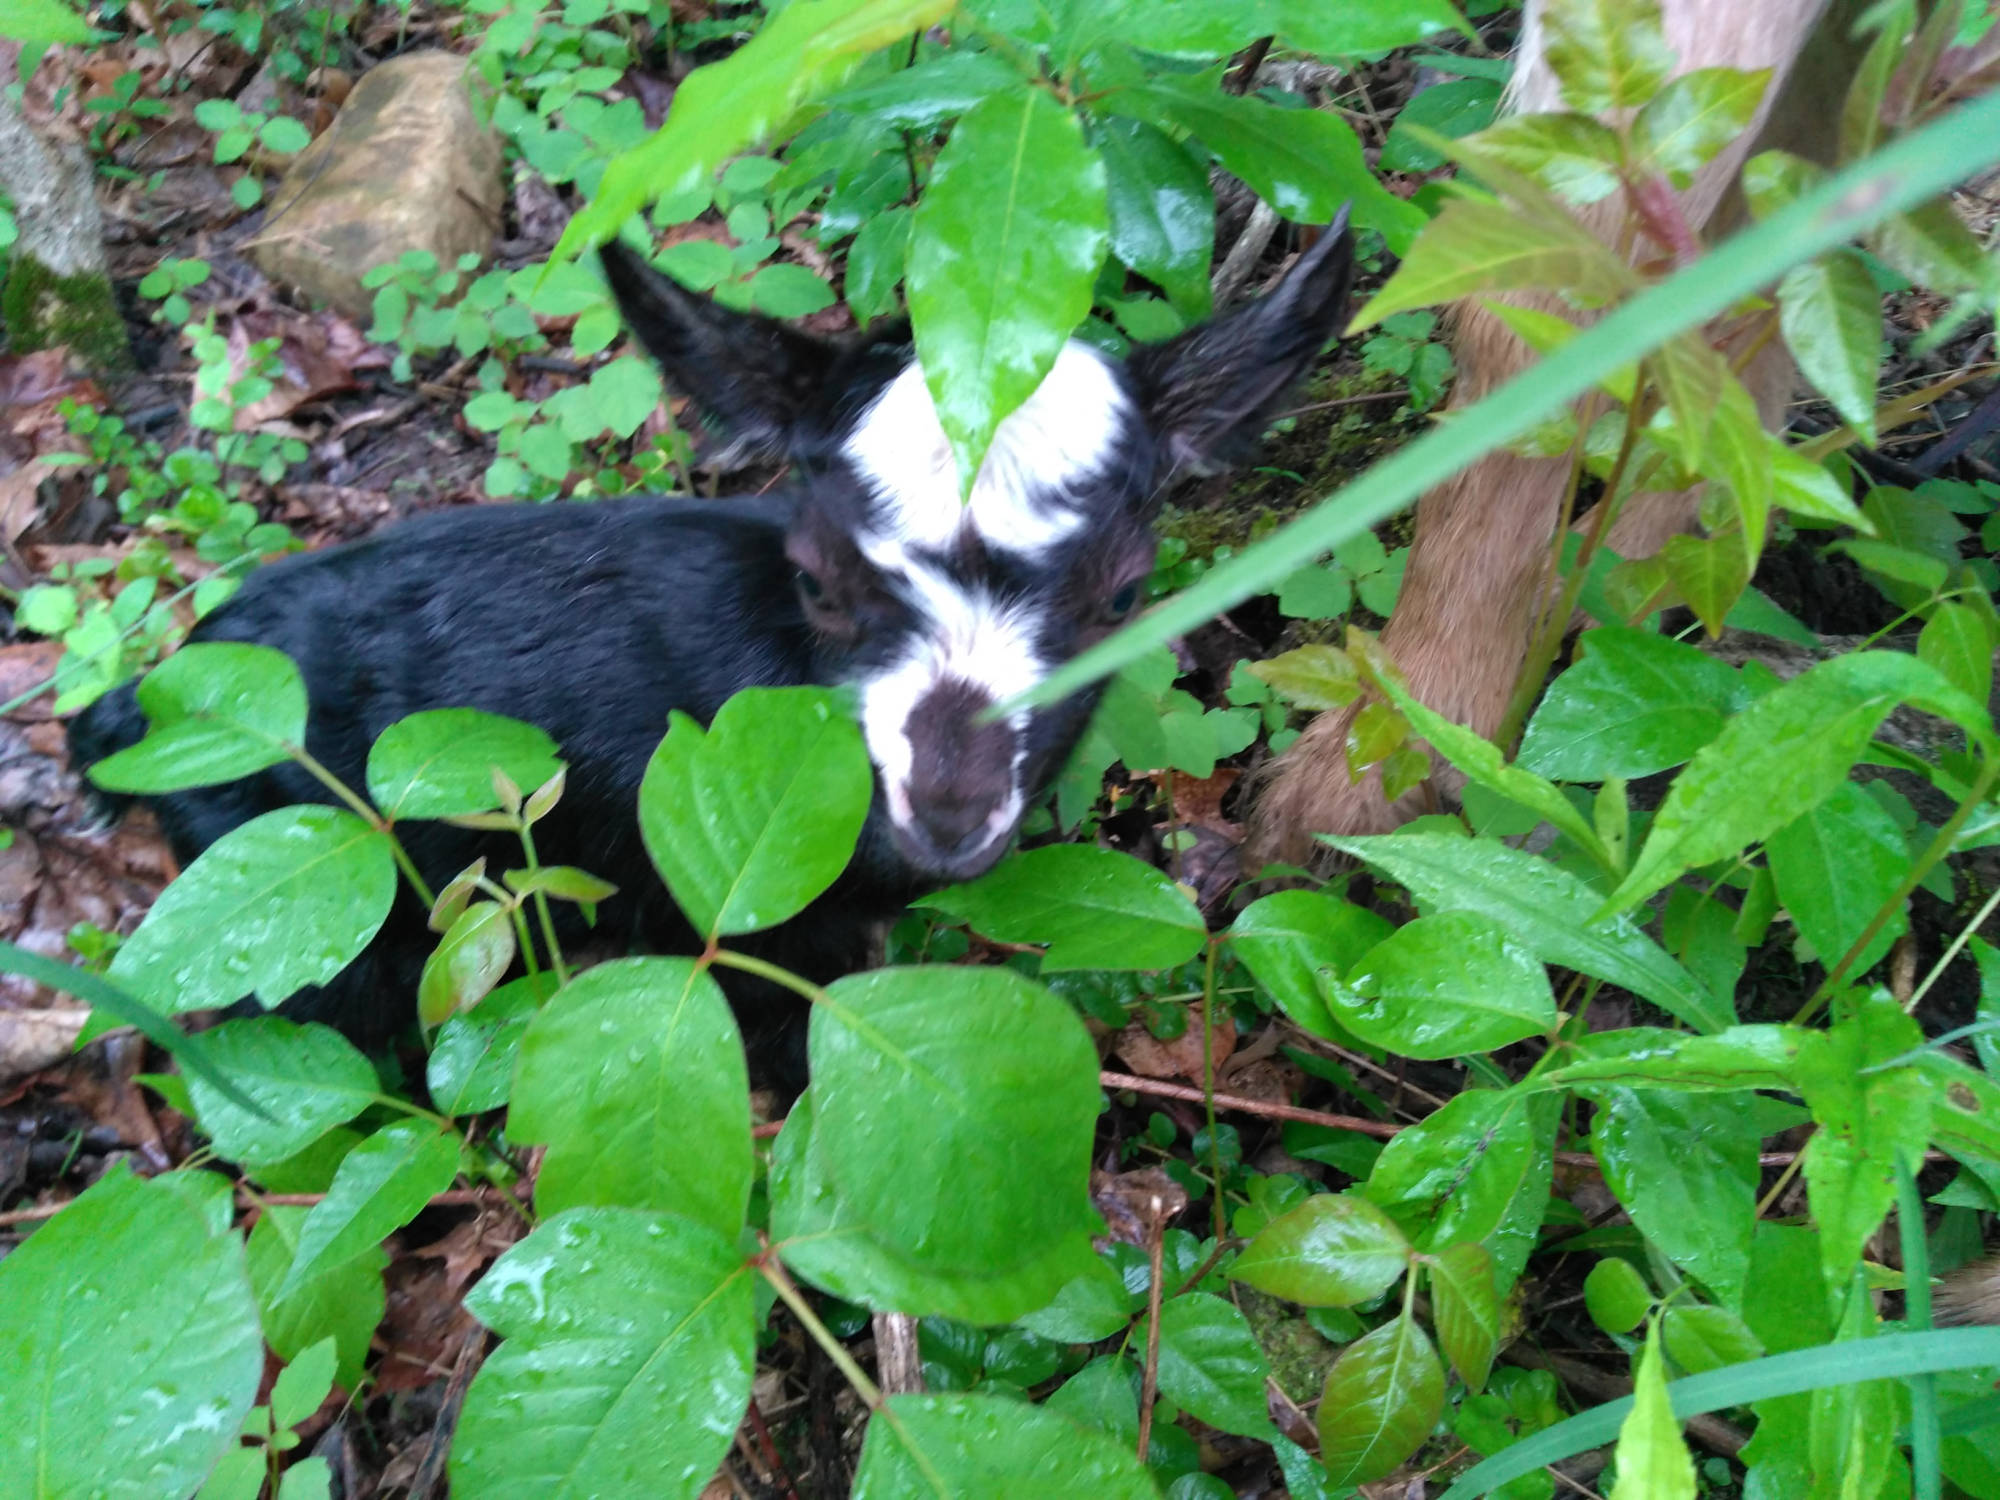 Goat in brush